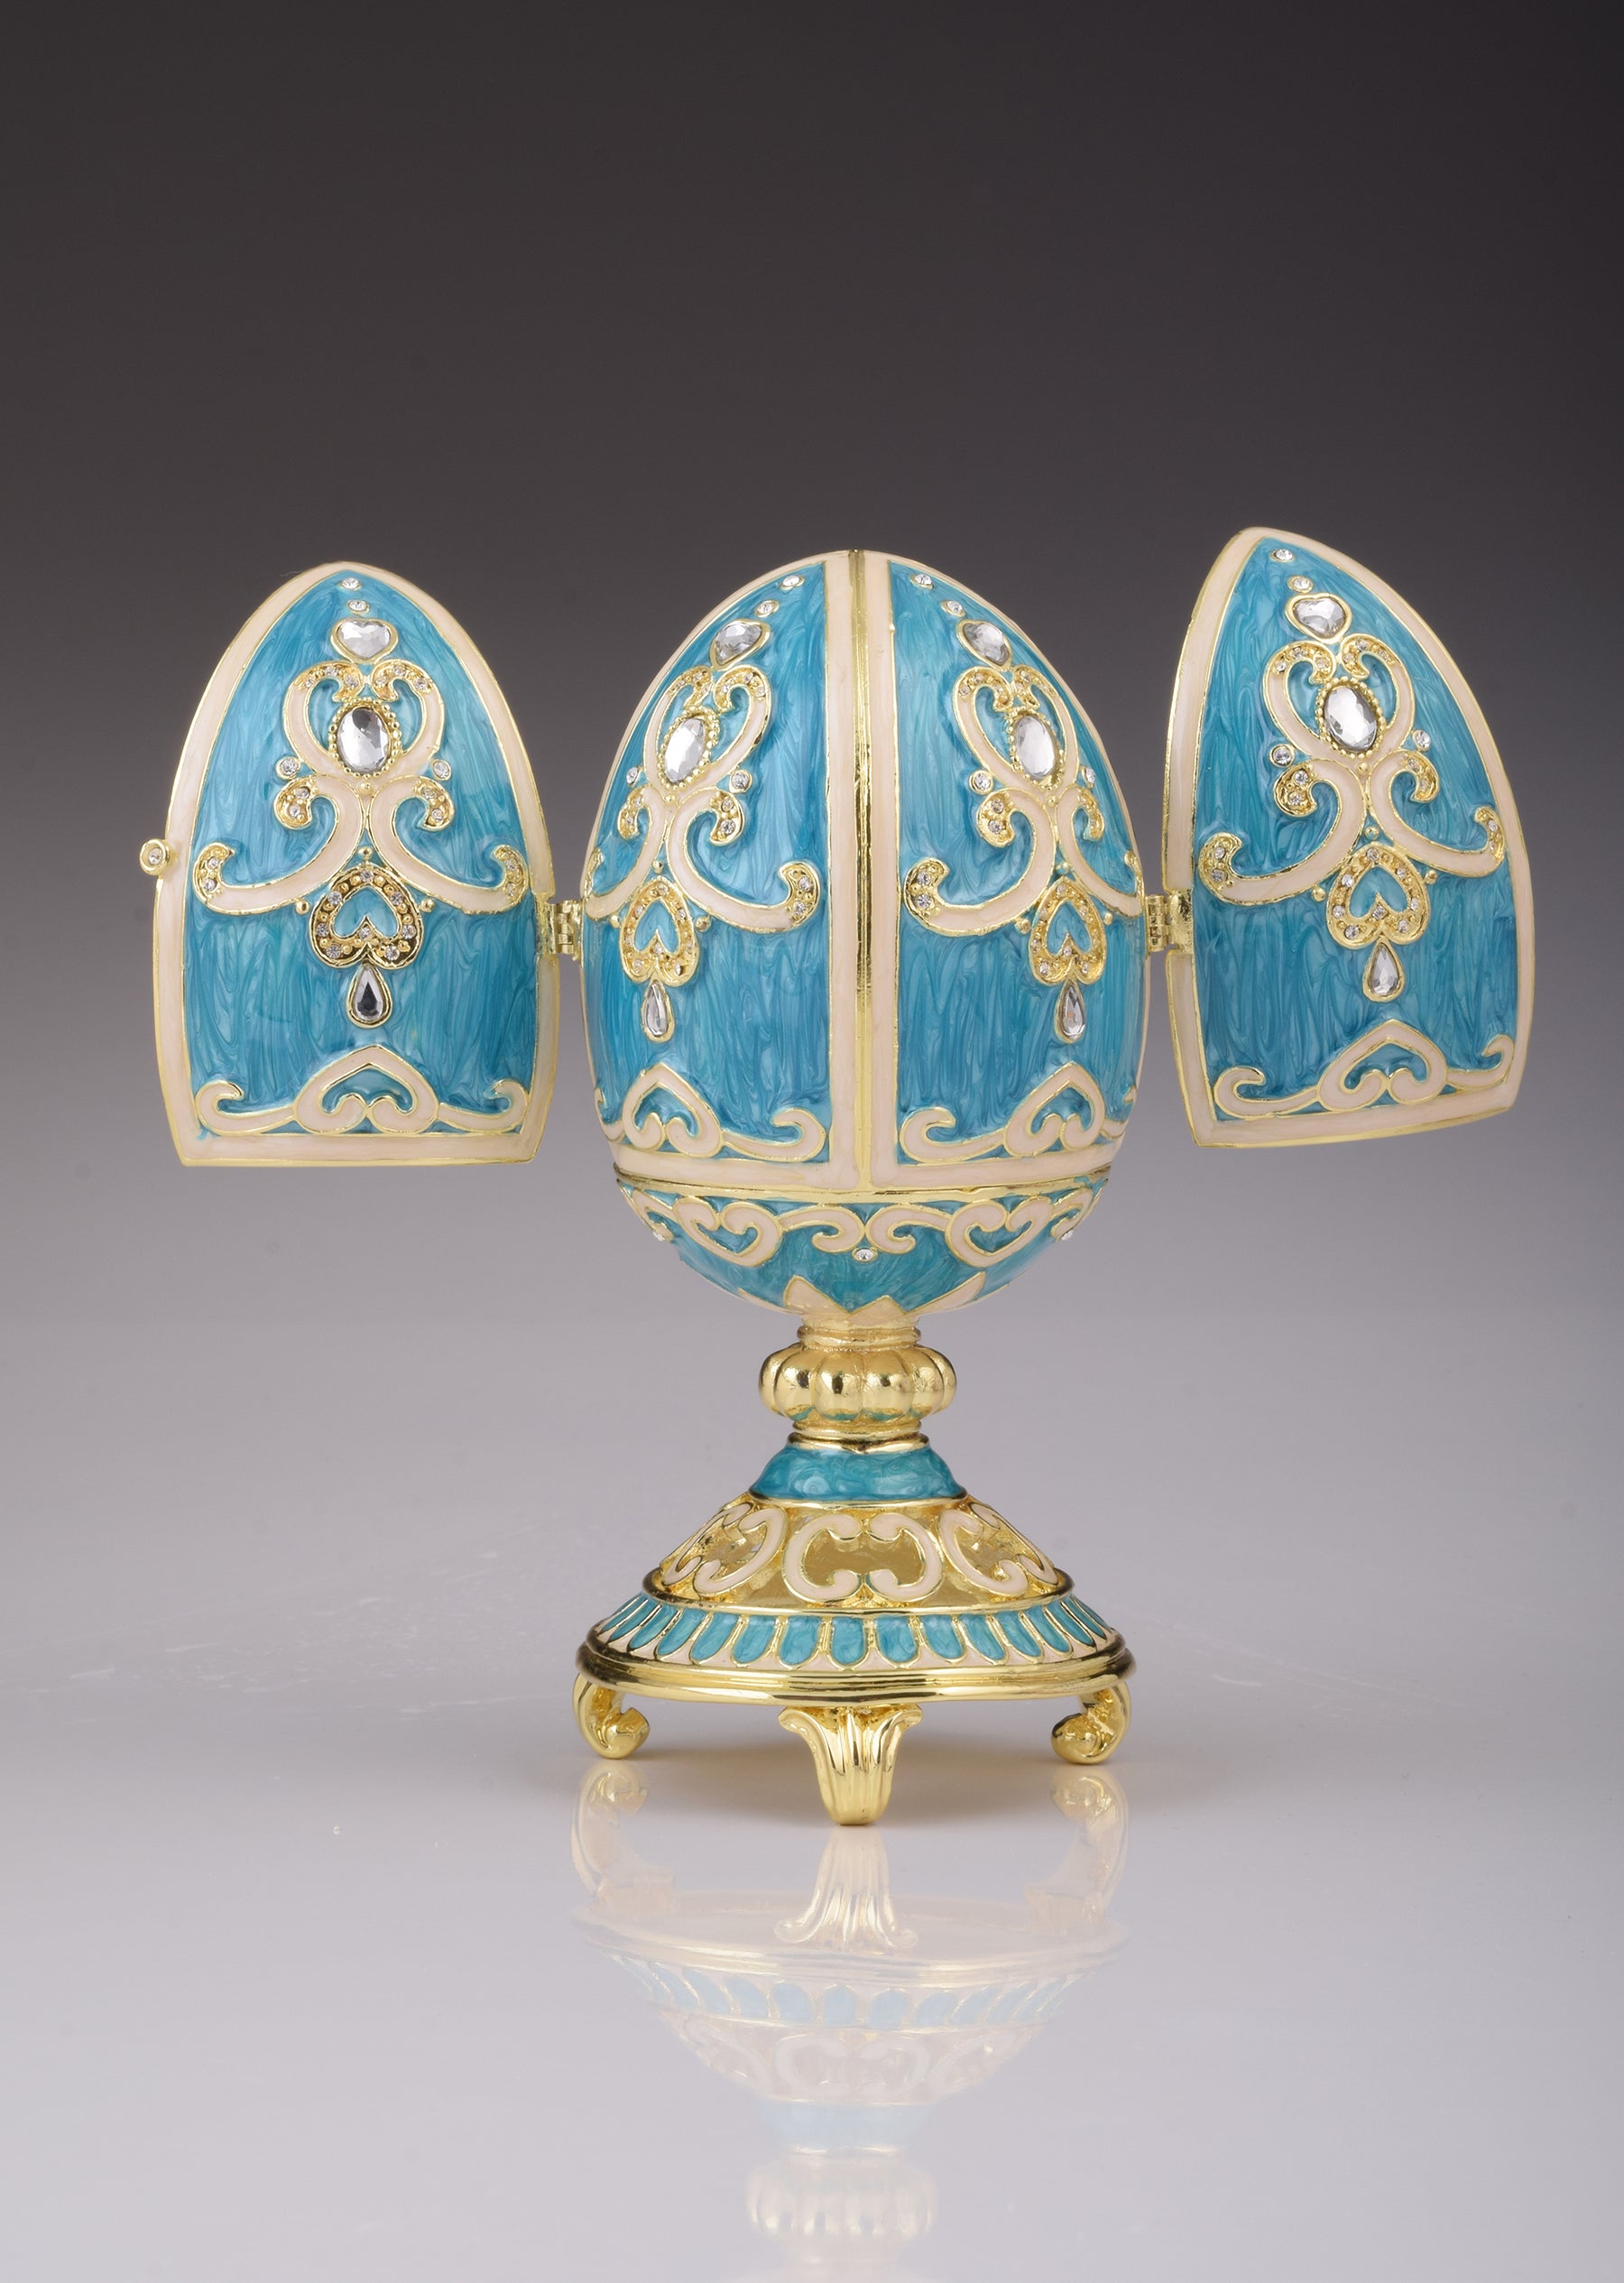 Blaugrünes Fabergé-Ei mit Uhr im Inneren